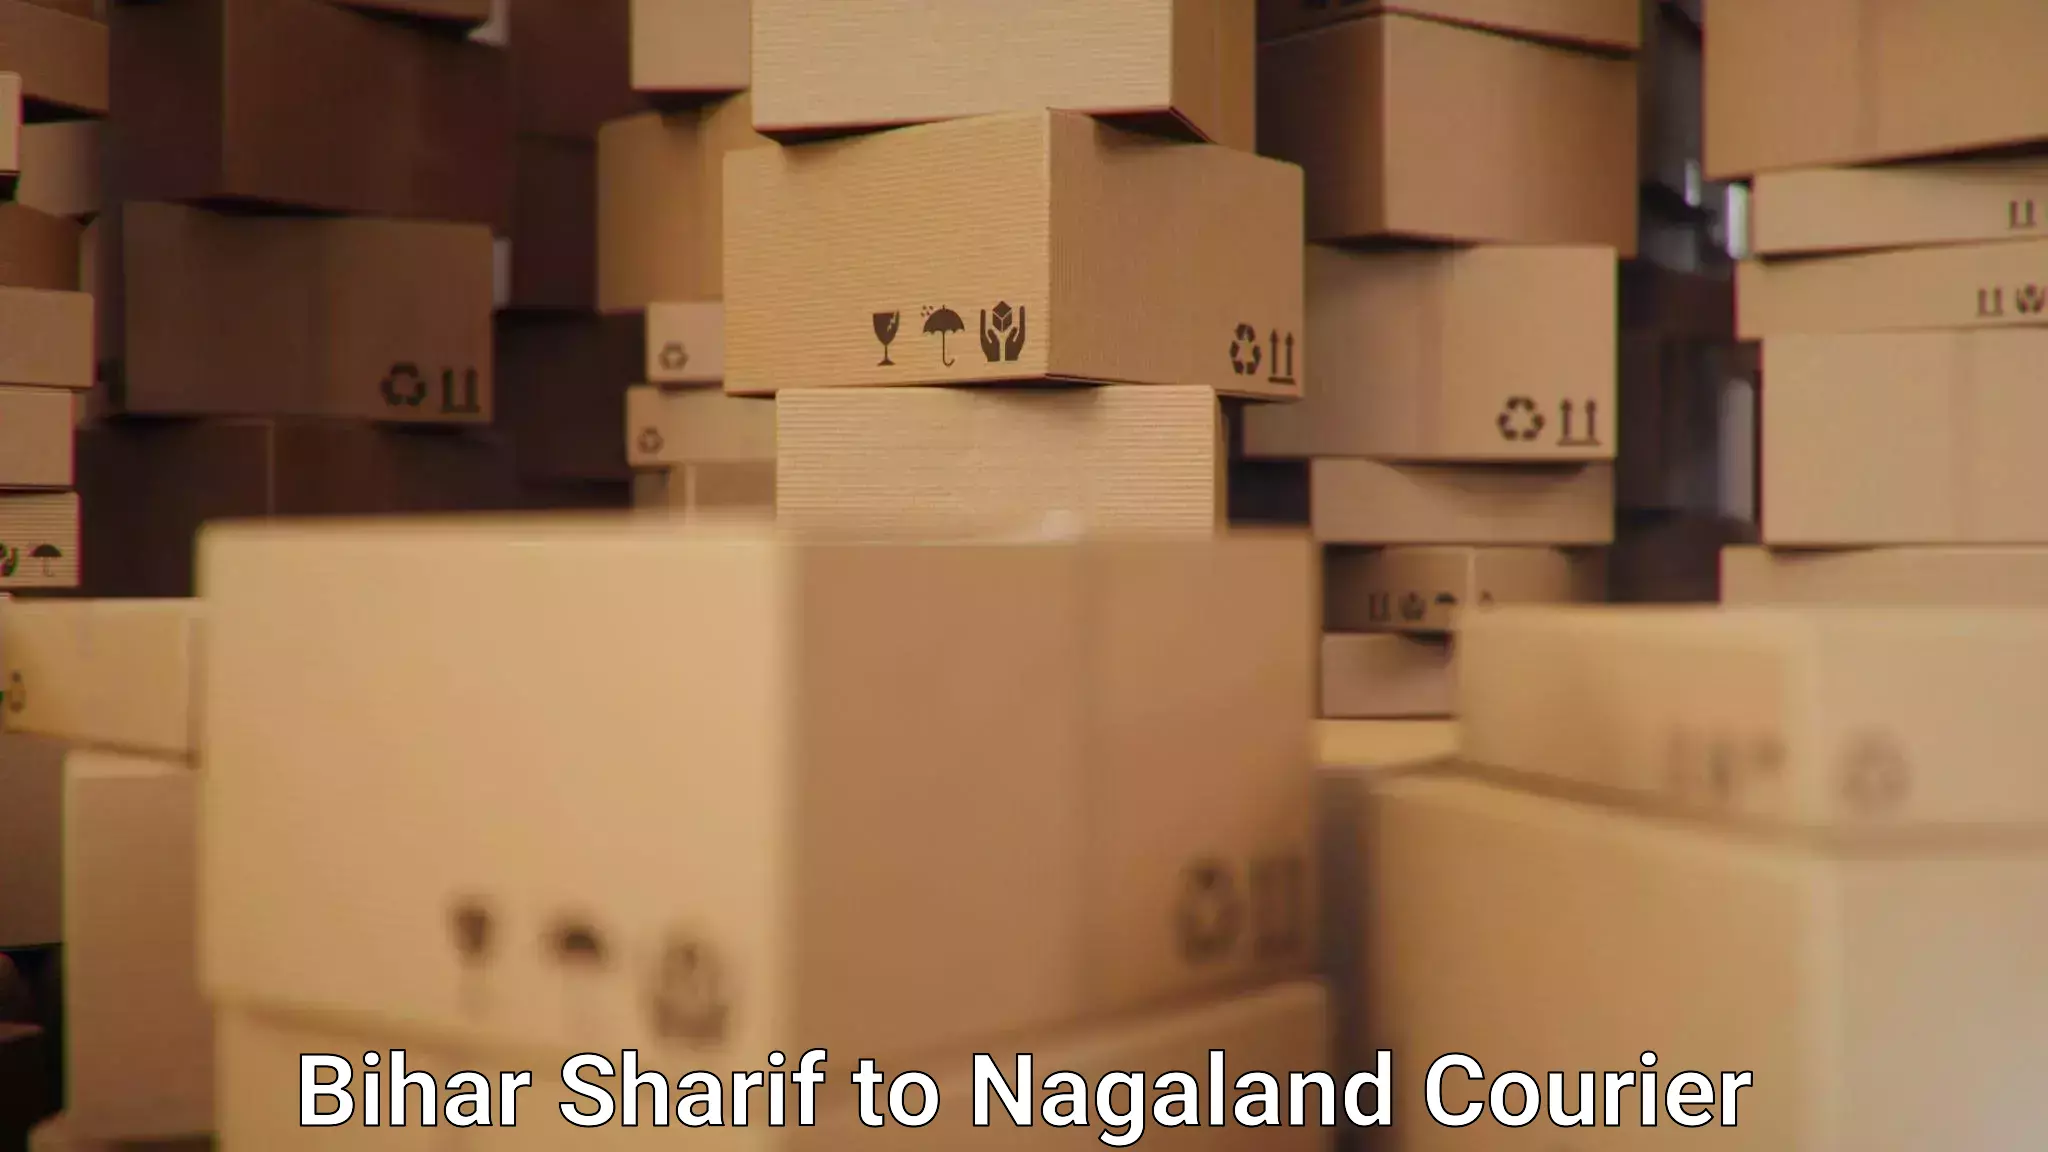 Multi-package shipping in Bihar Sharif to Chumukedima